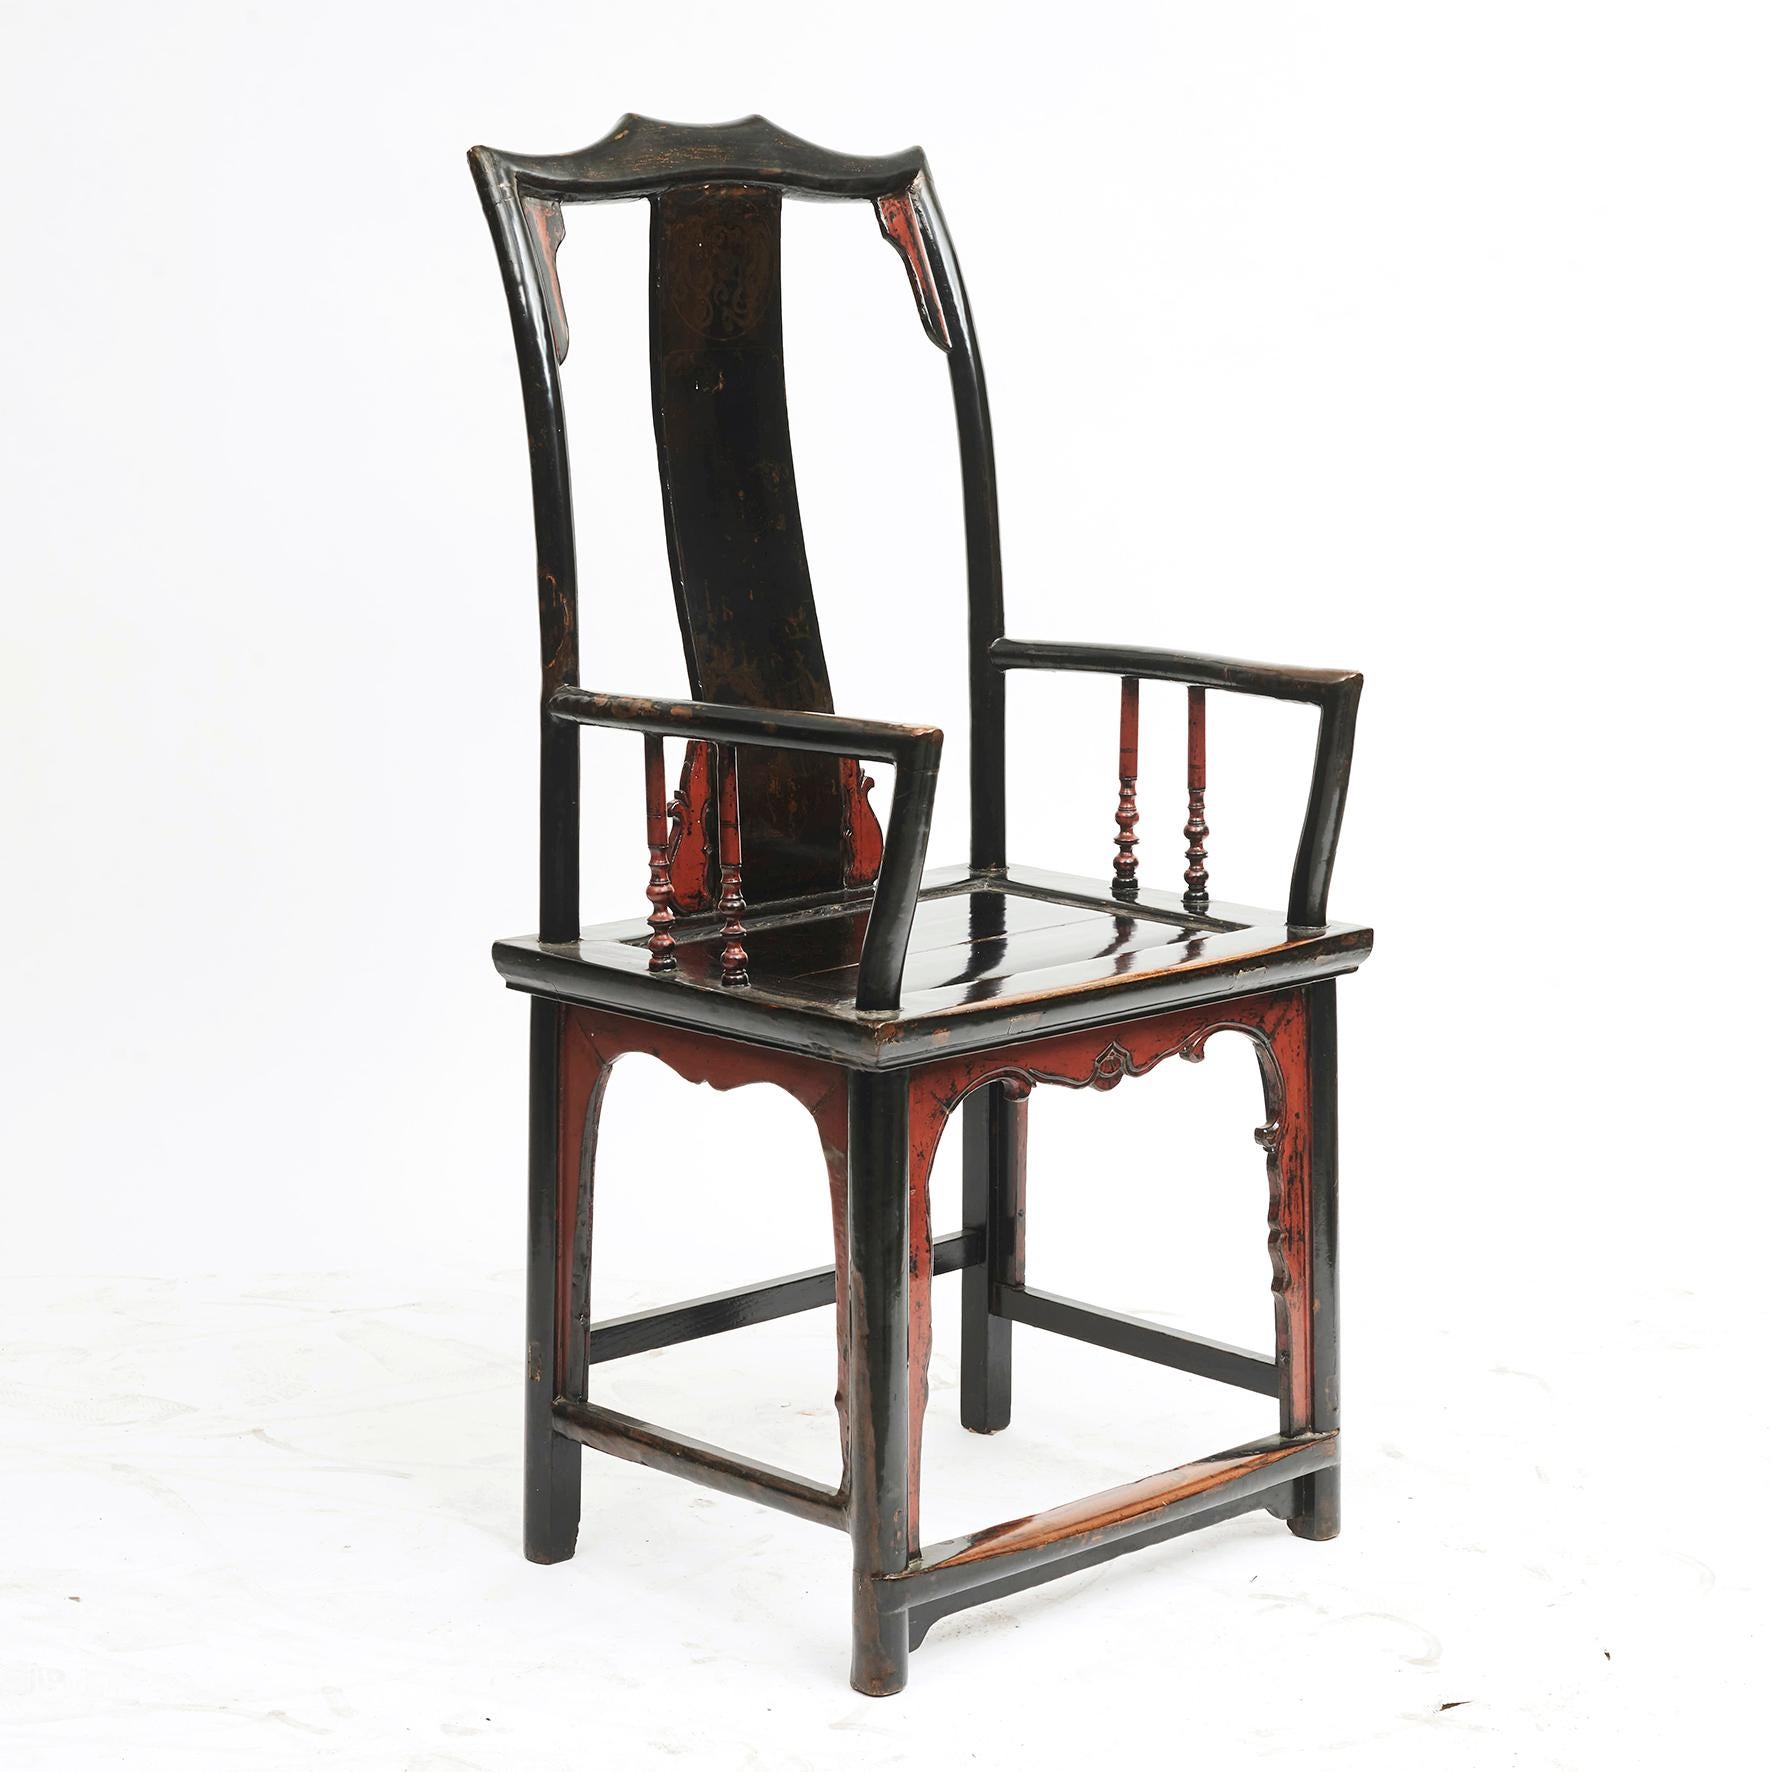 Chinesischer Beamtenstuhl aus dem 19. Jahrhundert.
Ulmenholz, original rot und schwarz lackiert.
Rückenlehne mit vagen Resten von Verzierungen (natürliche Abnutzung).
Geschnitzte Schürzen mit Wellenschliff unter dem Sitz
Der Stuhl trägt den Namen